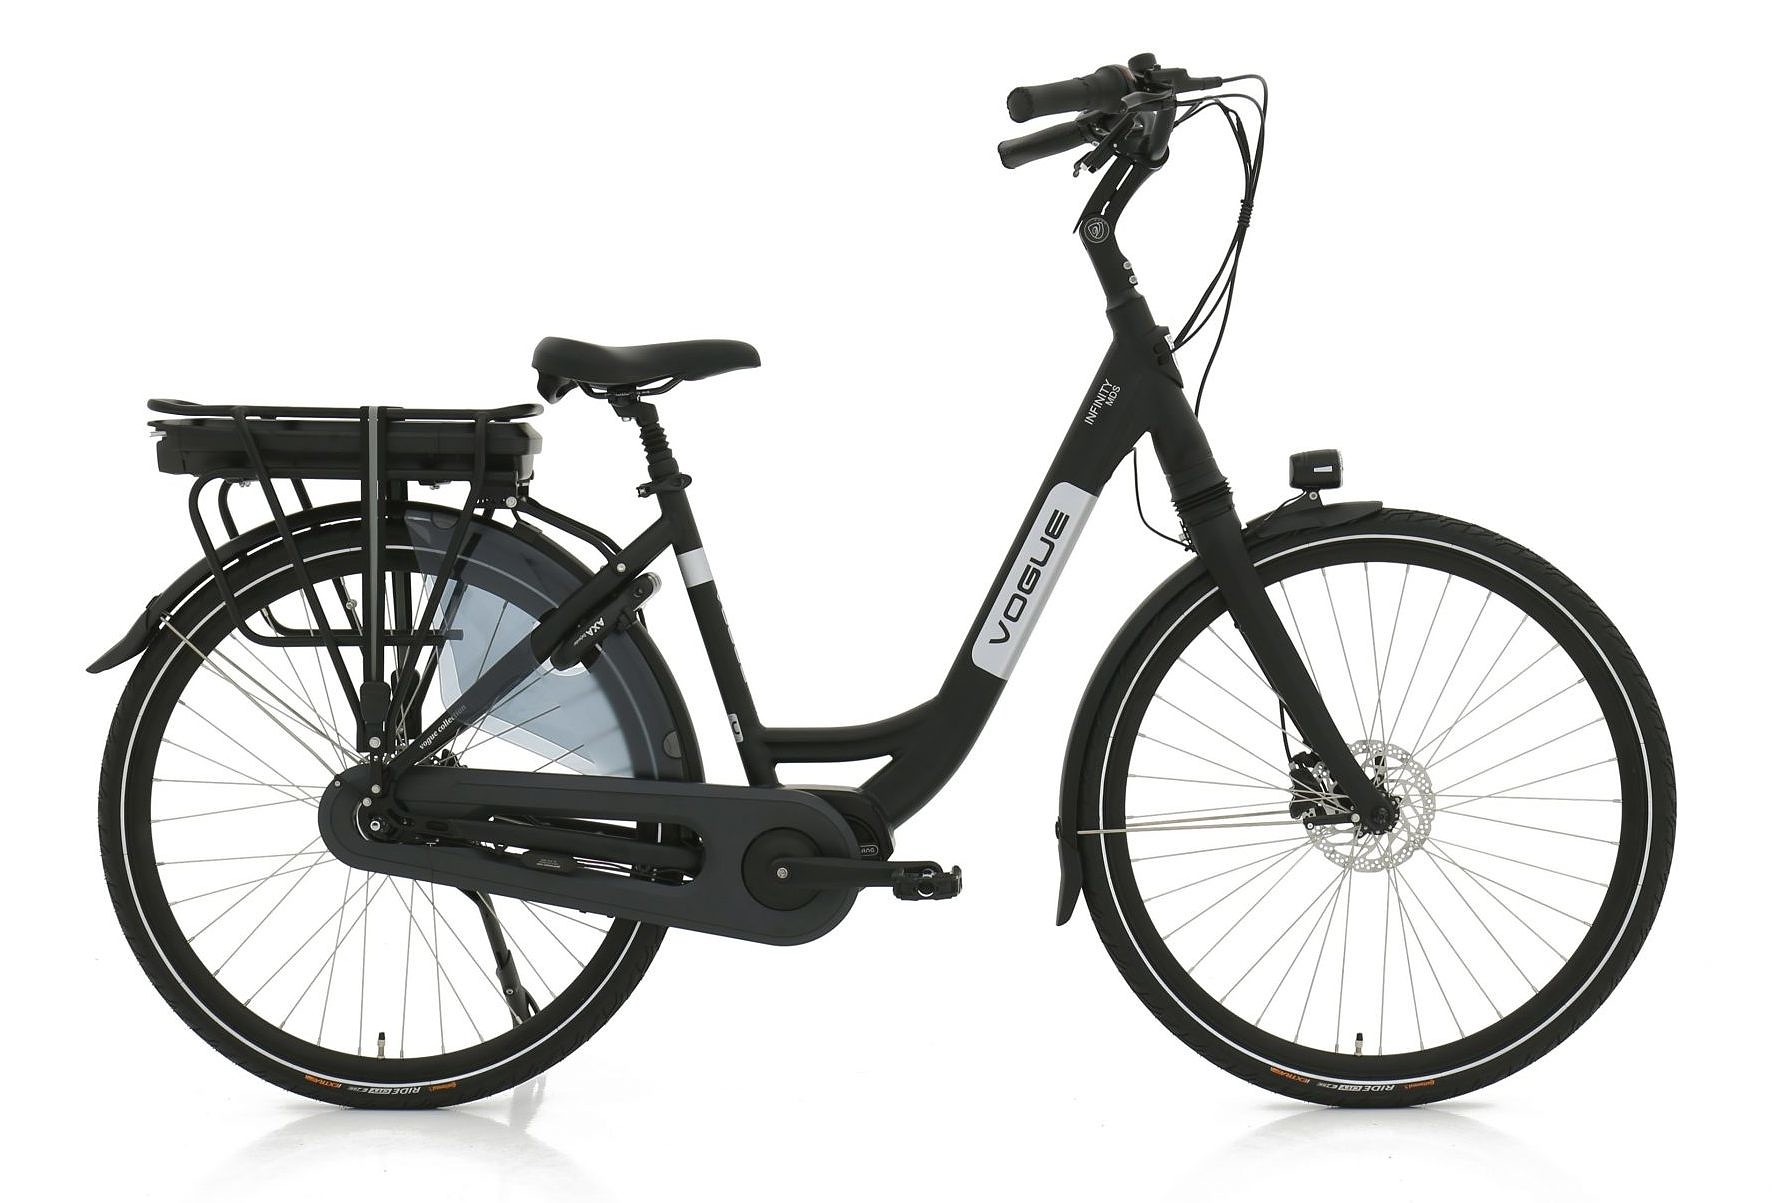 Vogue Elektrische fiets Infinity MDS Dames 53 cm Mat zwart 468 Wh Mat zwart